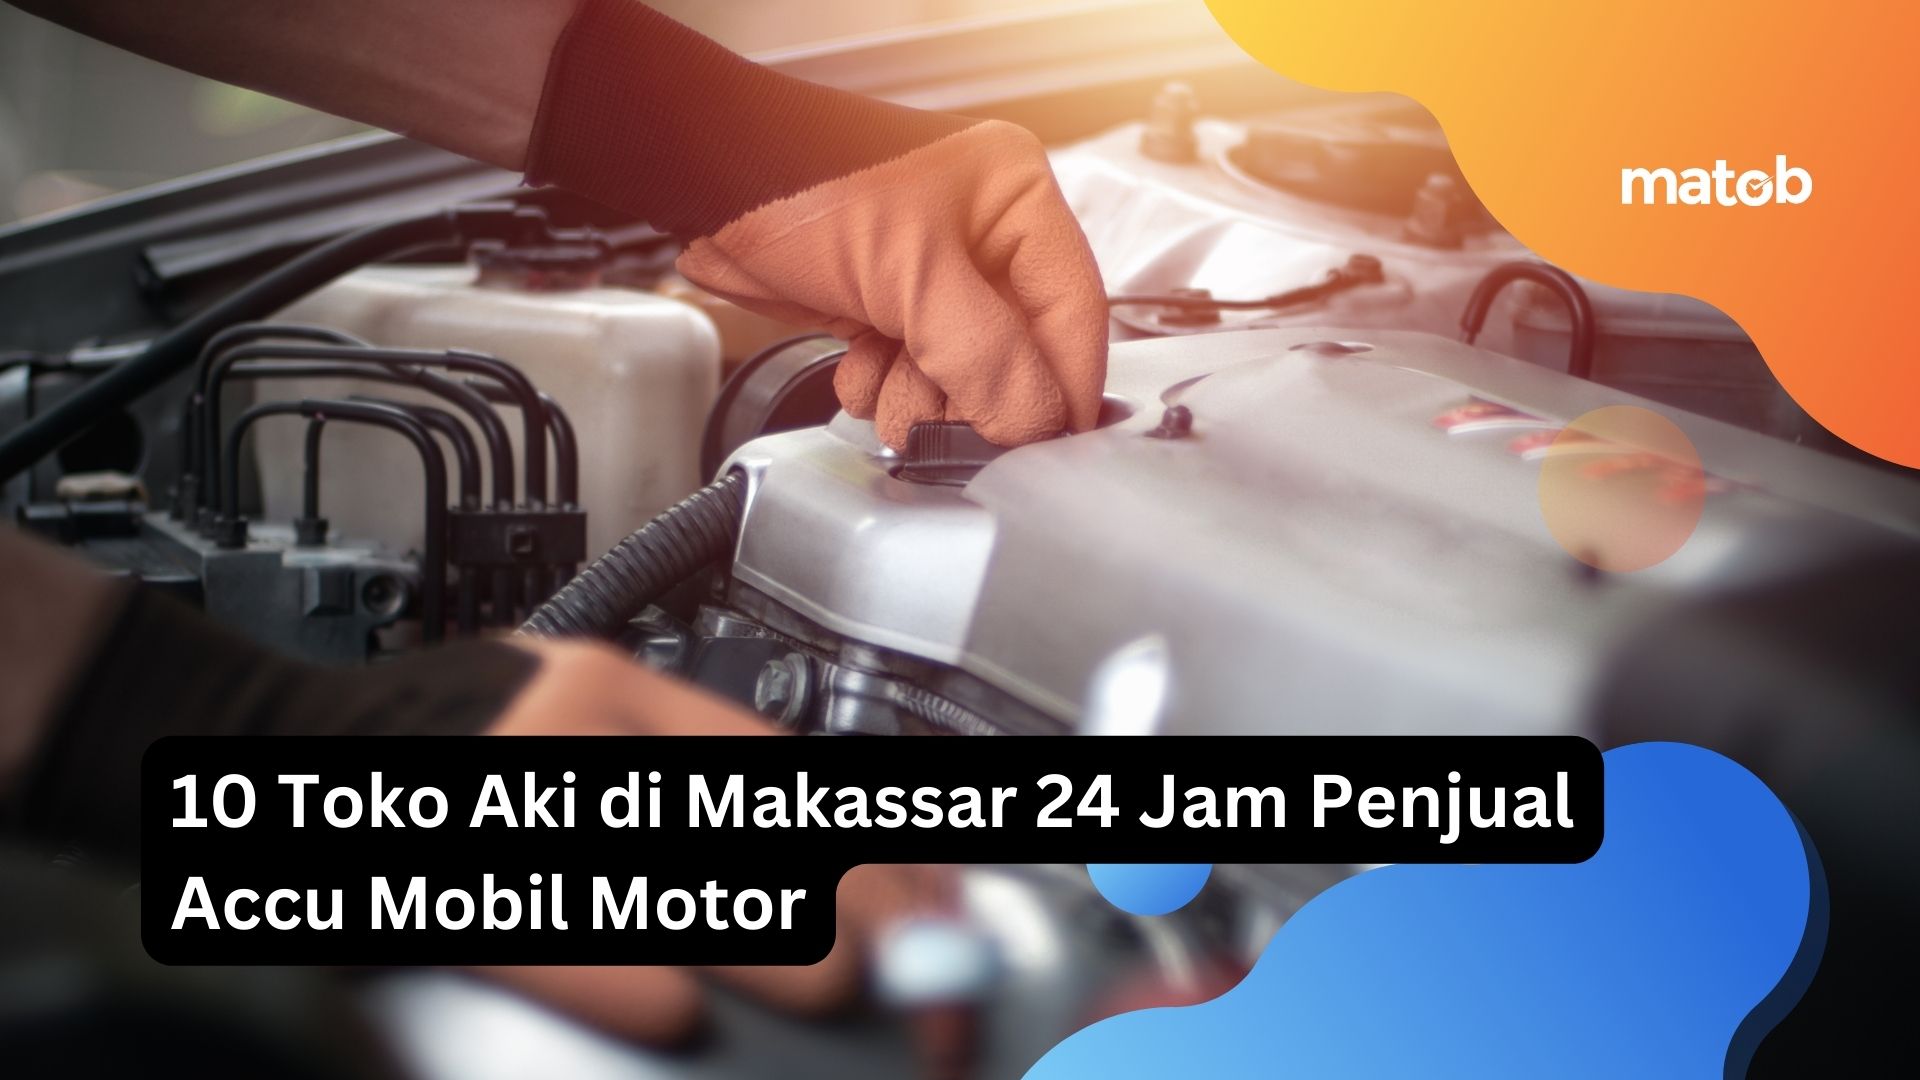 10 Toko Aki di Makassar 24 Jam Penjual Accu Mobil Motor